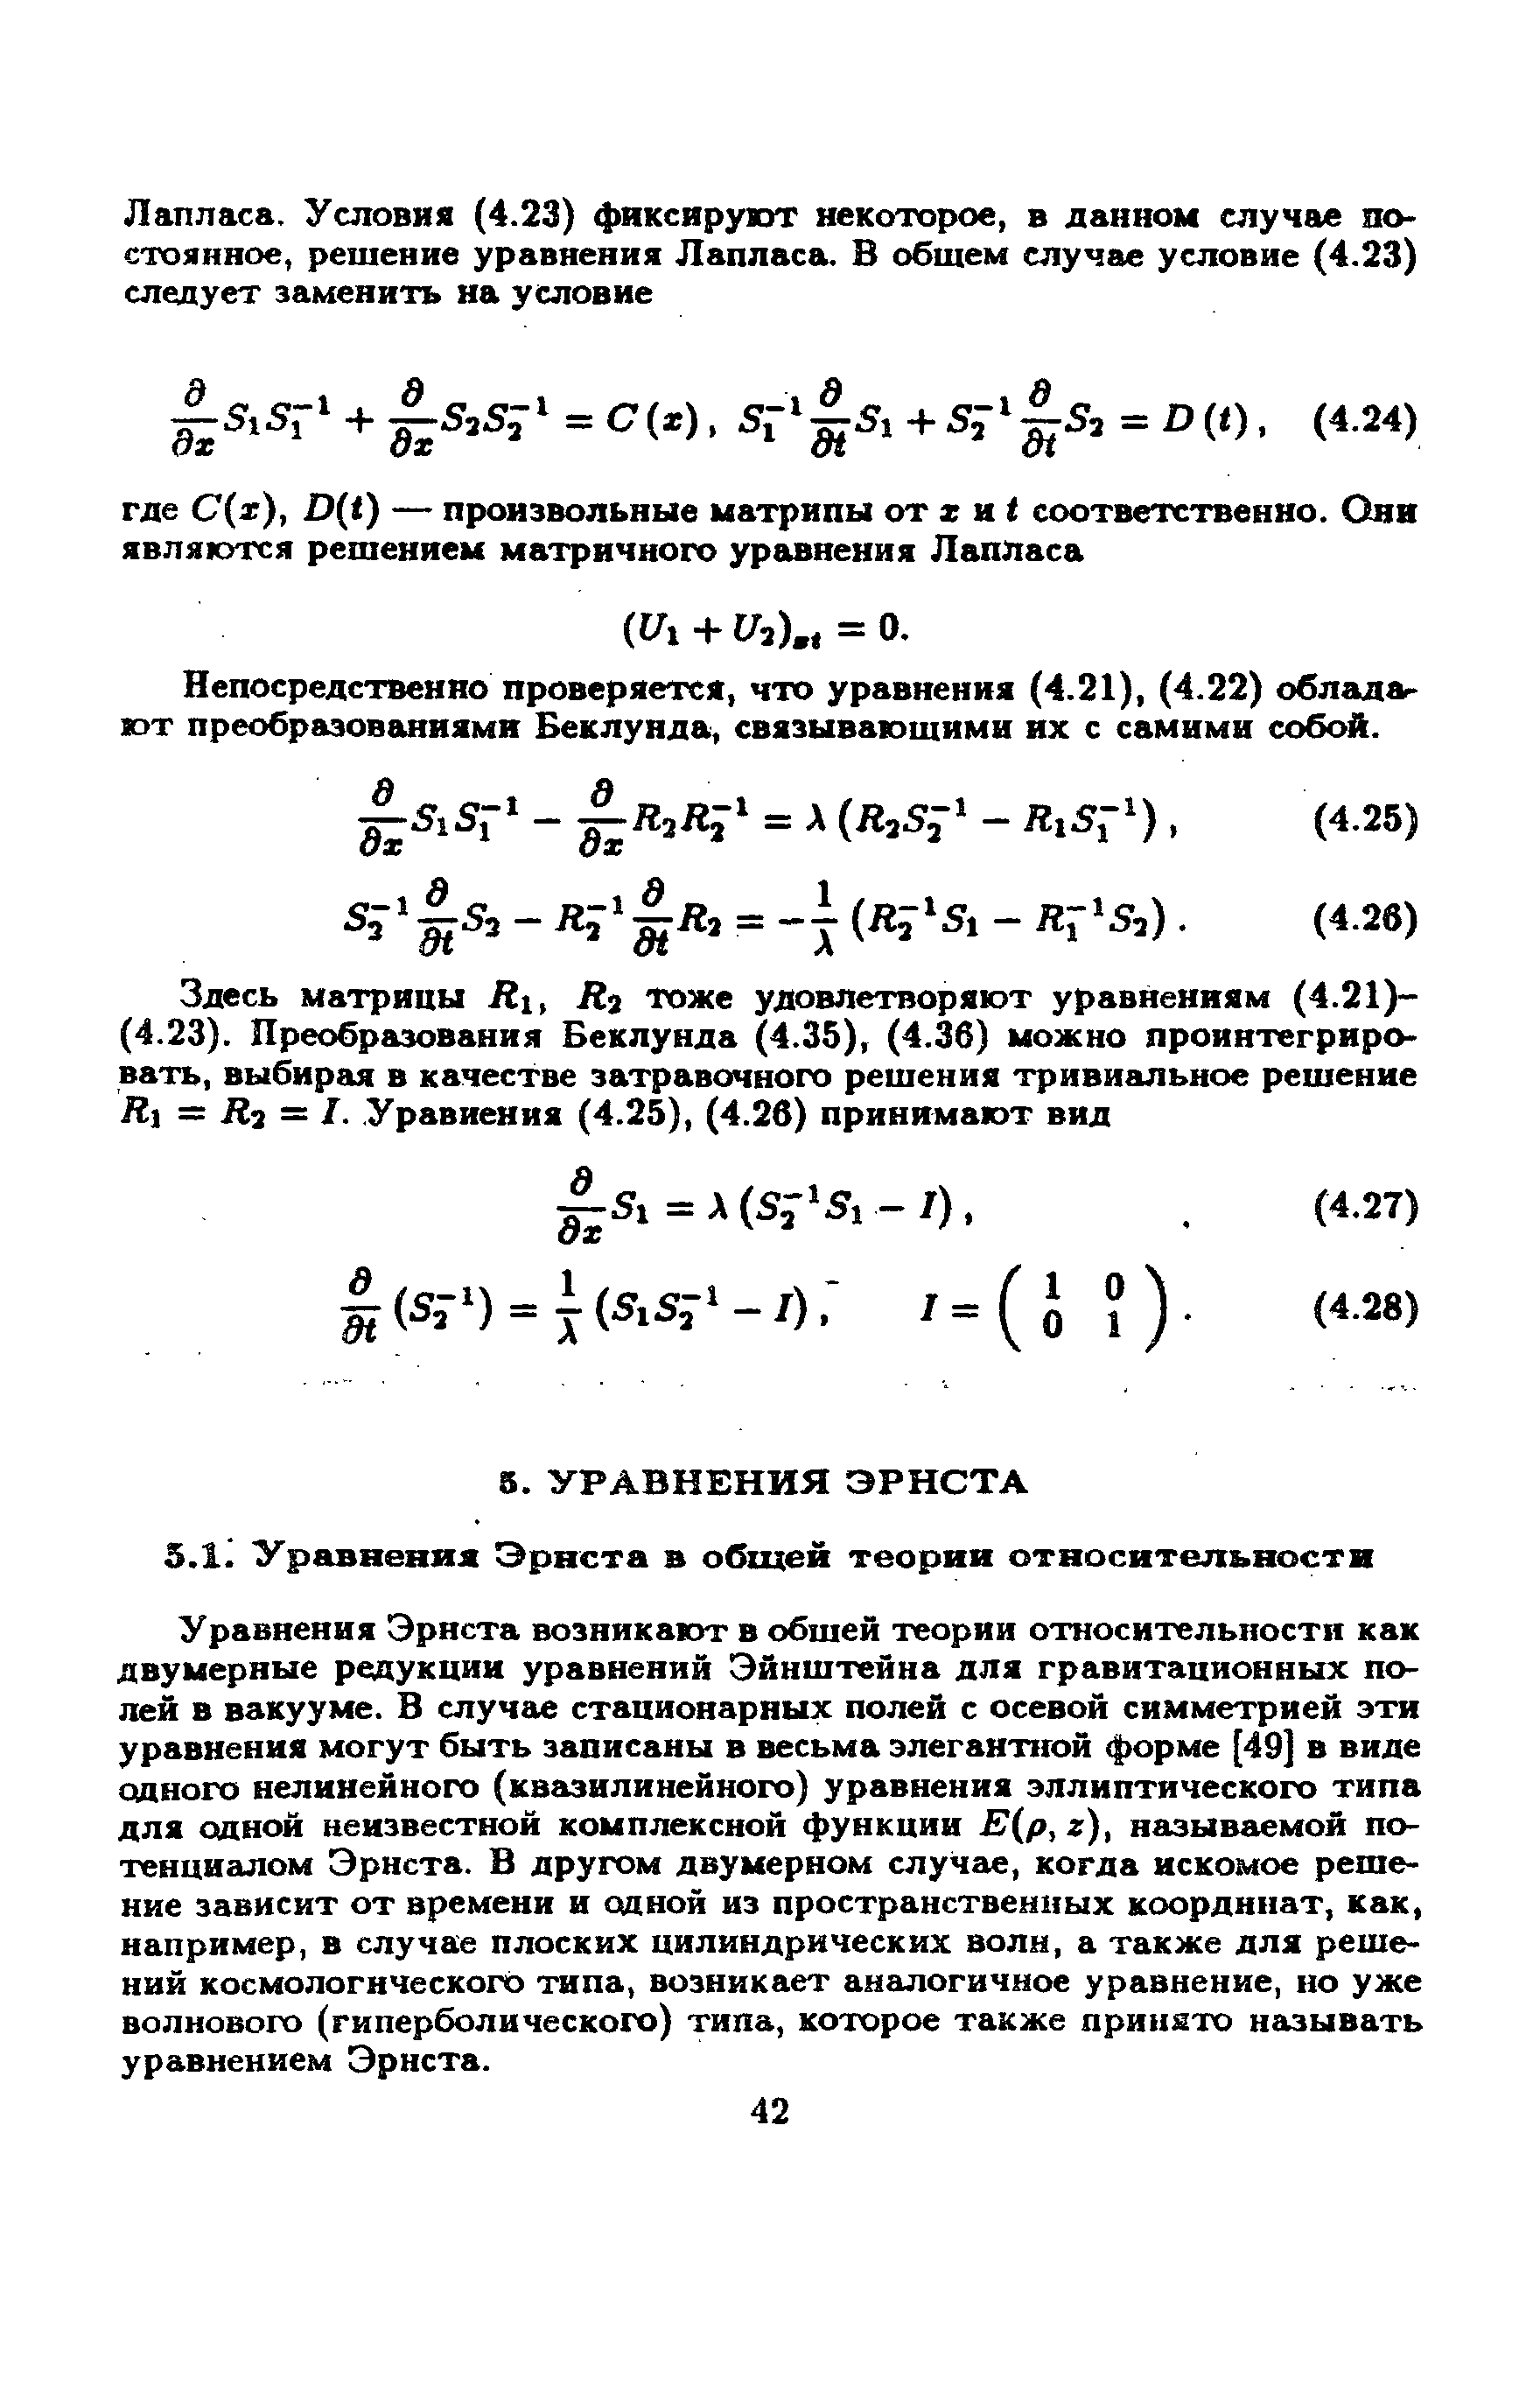 Уравнения Эрнста возникают в обшей теории относительности как двумерные редукции уравнений Эйнштейна для гравитационных полей в вакууме. В случае стационарных полей с осевой симметрией эти уравнения могут быть записаны в весьма элегант1гой форме [49] в виде одного нелинейного (квазилинейного) уравнения эллиптического типа для одной неизвестной комплексной функции Е(р,г), называемой потенциалом Эрнста. В другом двумерном случае, когда искомое решение зависит от времени и одной из пространственных координат, как, например, в случае плоских цилиндрических волн, а также для решений космологического типа, возникает аналогичное уравнение, но уже волнового (гиперболического) типа, которое также принято называть уравнением Эрнста.
